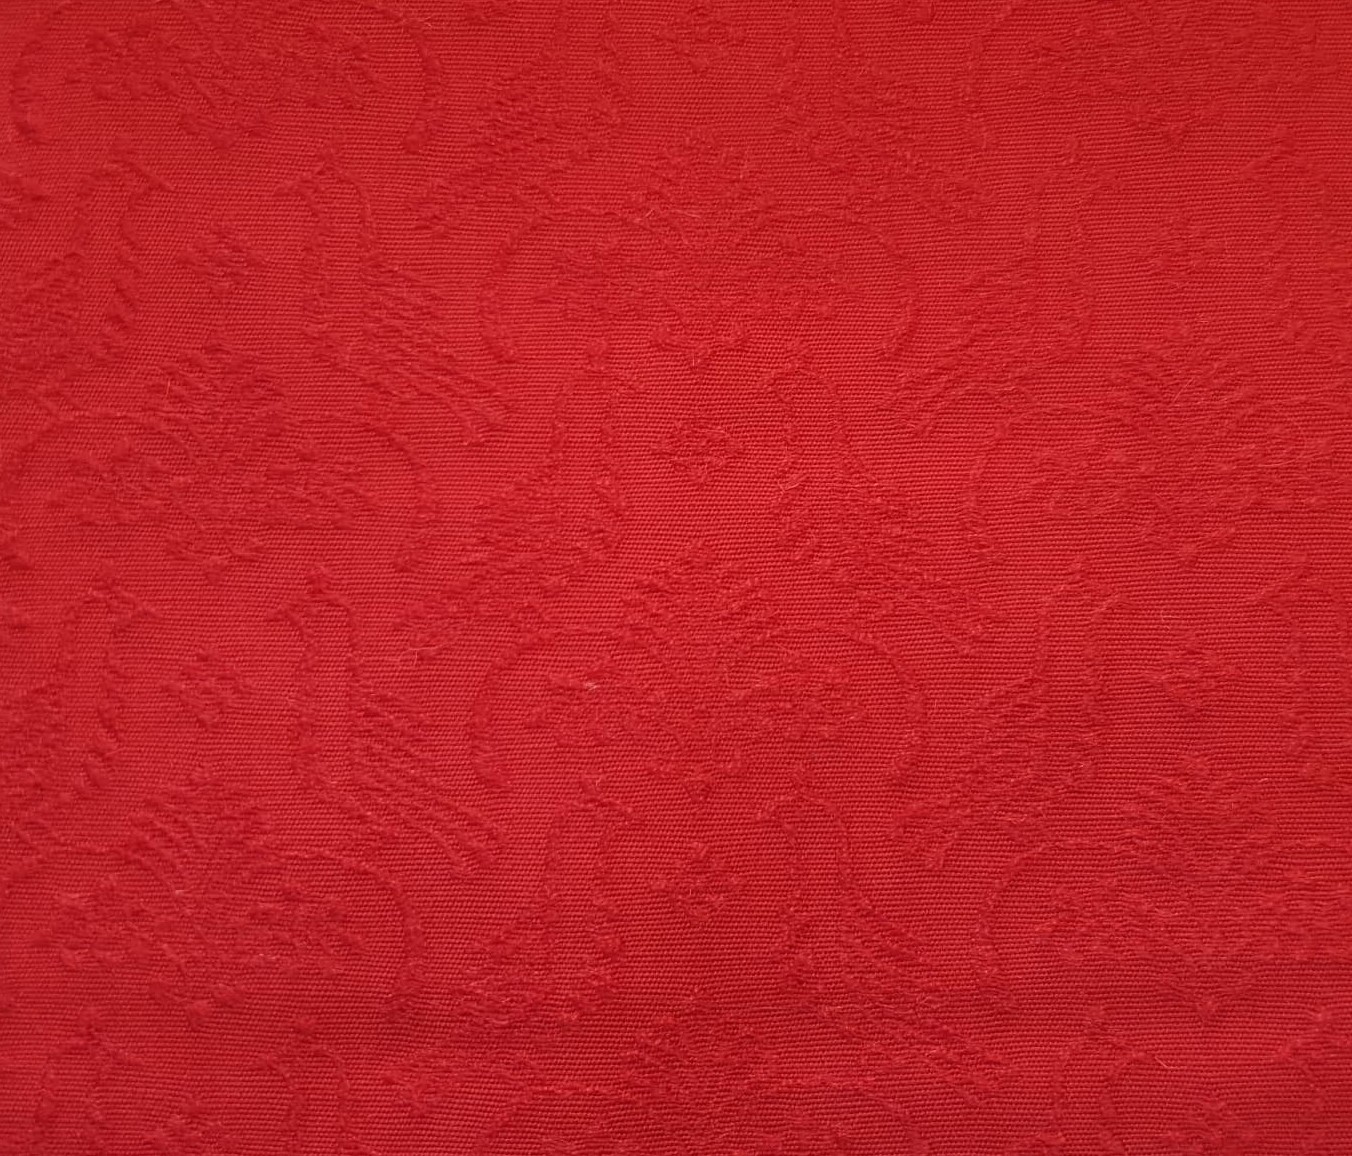 Fabric swatch- Wool damask